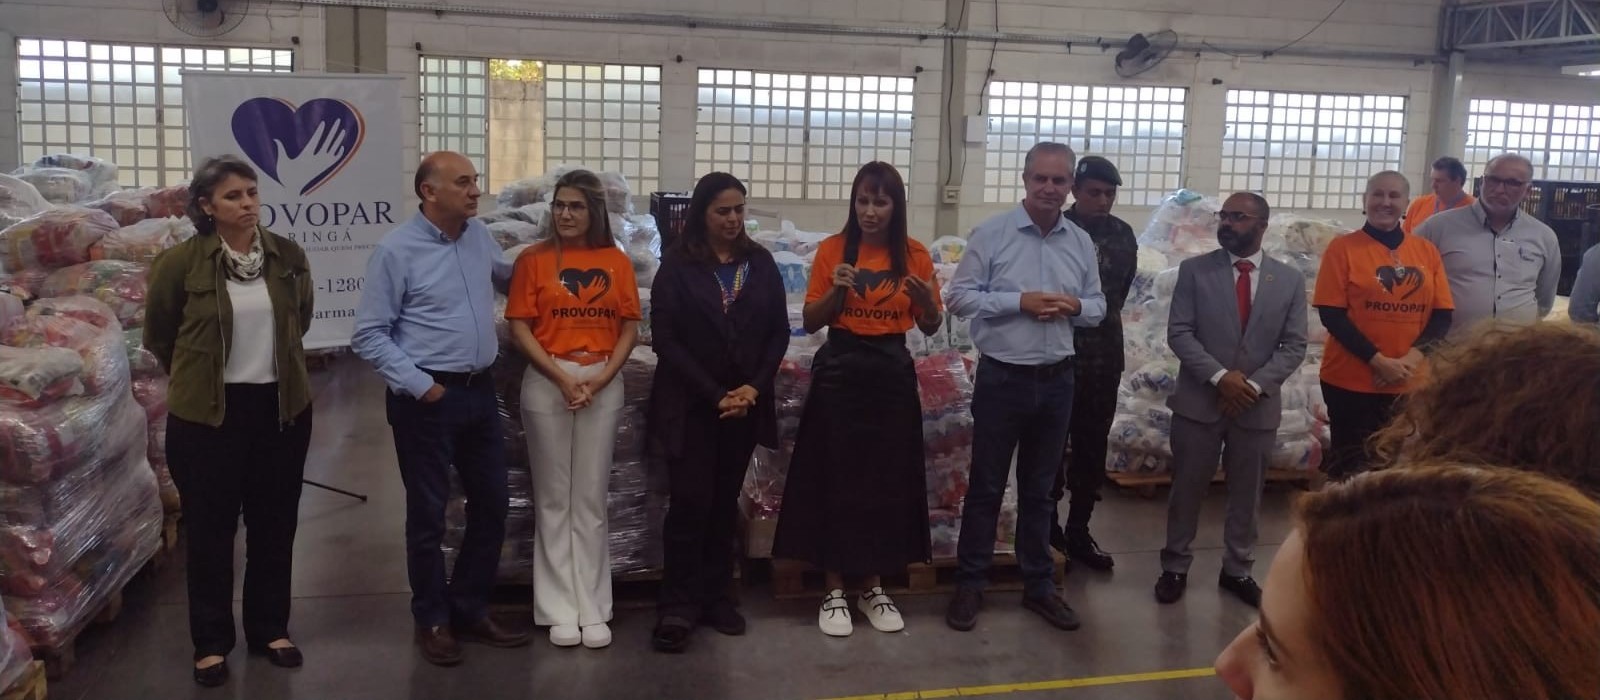 Entidades assistenciais de Maringá vão receber 60 toneladas de alimentos arrecadados na Expoingá